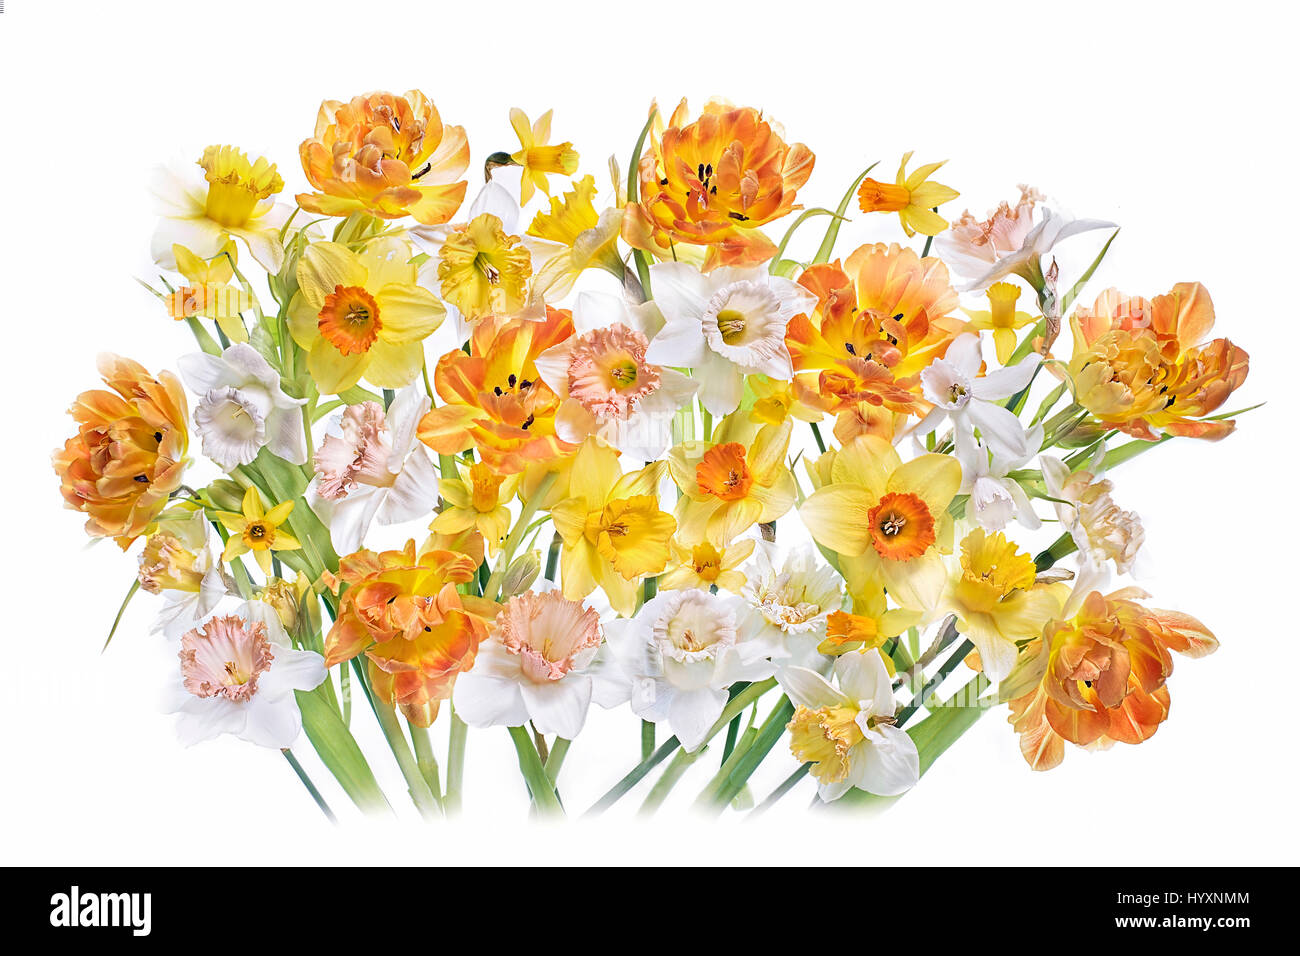 Lebendige Farben Frühling Tulpen und Narzissen Blumen vor einem weißen Hintergrund. Stockfoto